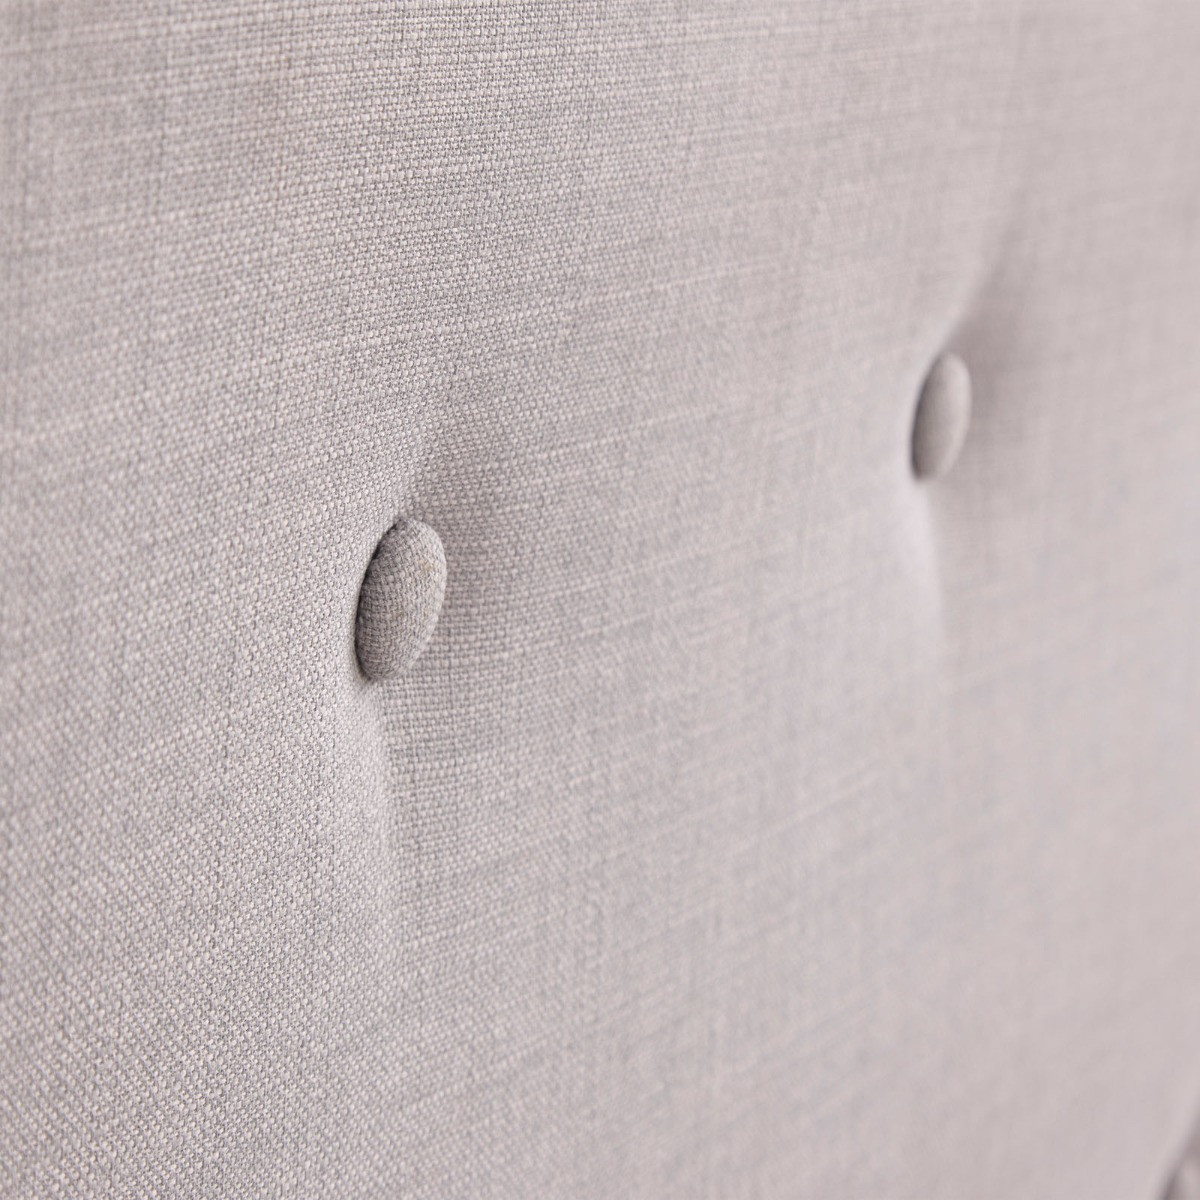 Ashbourne Upholstered Fabric Bed Frame, 5ft King - Light Grey>